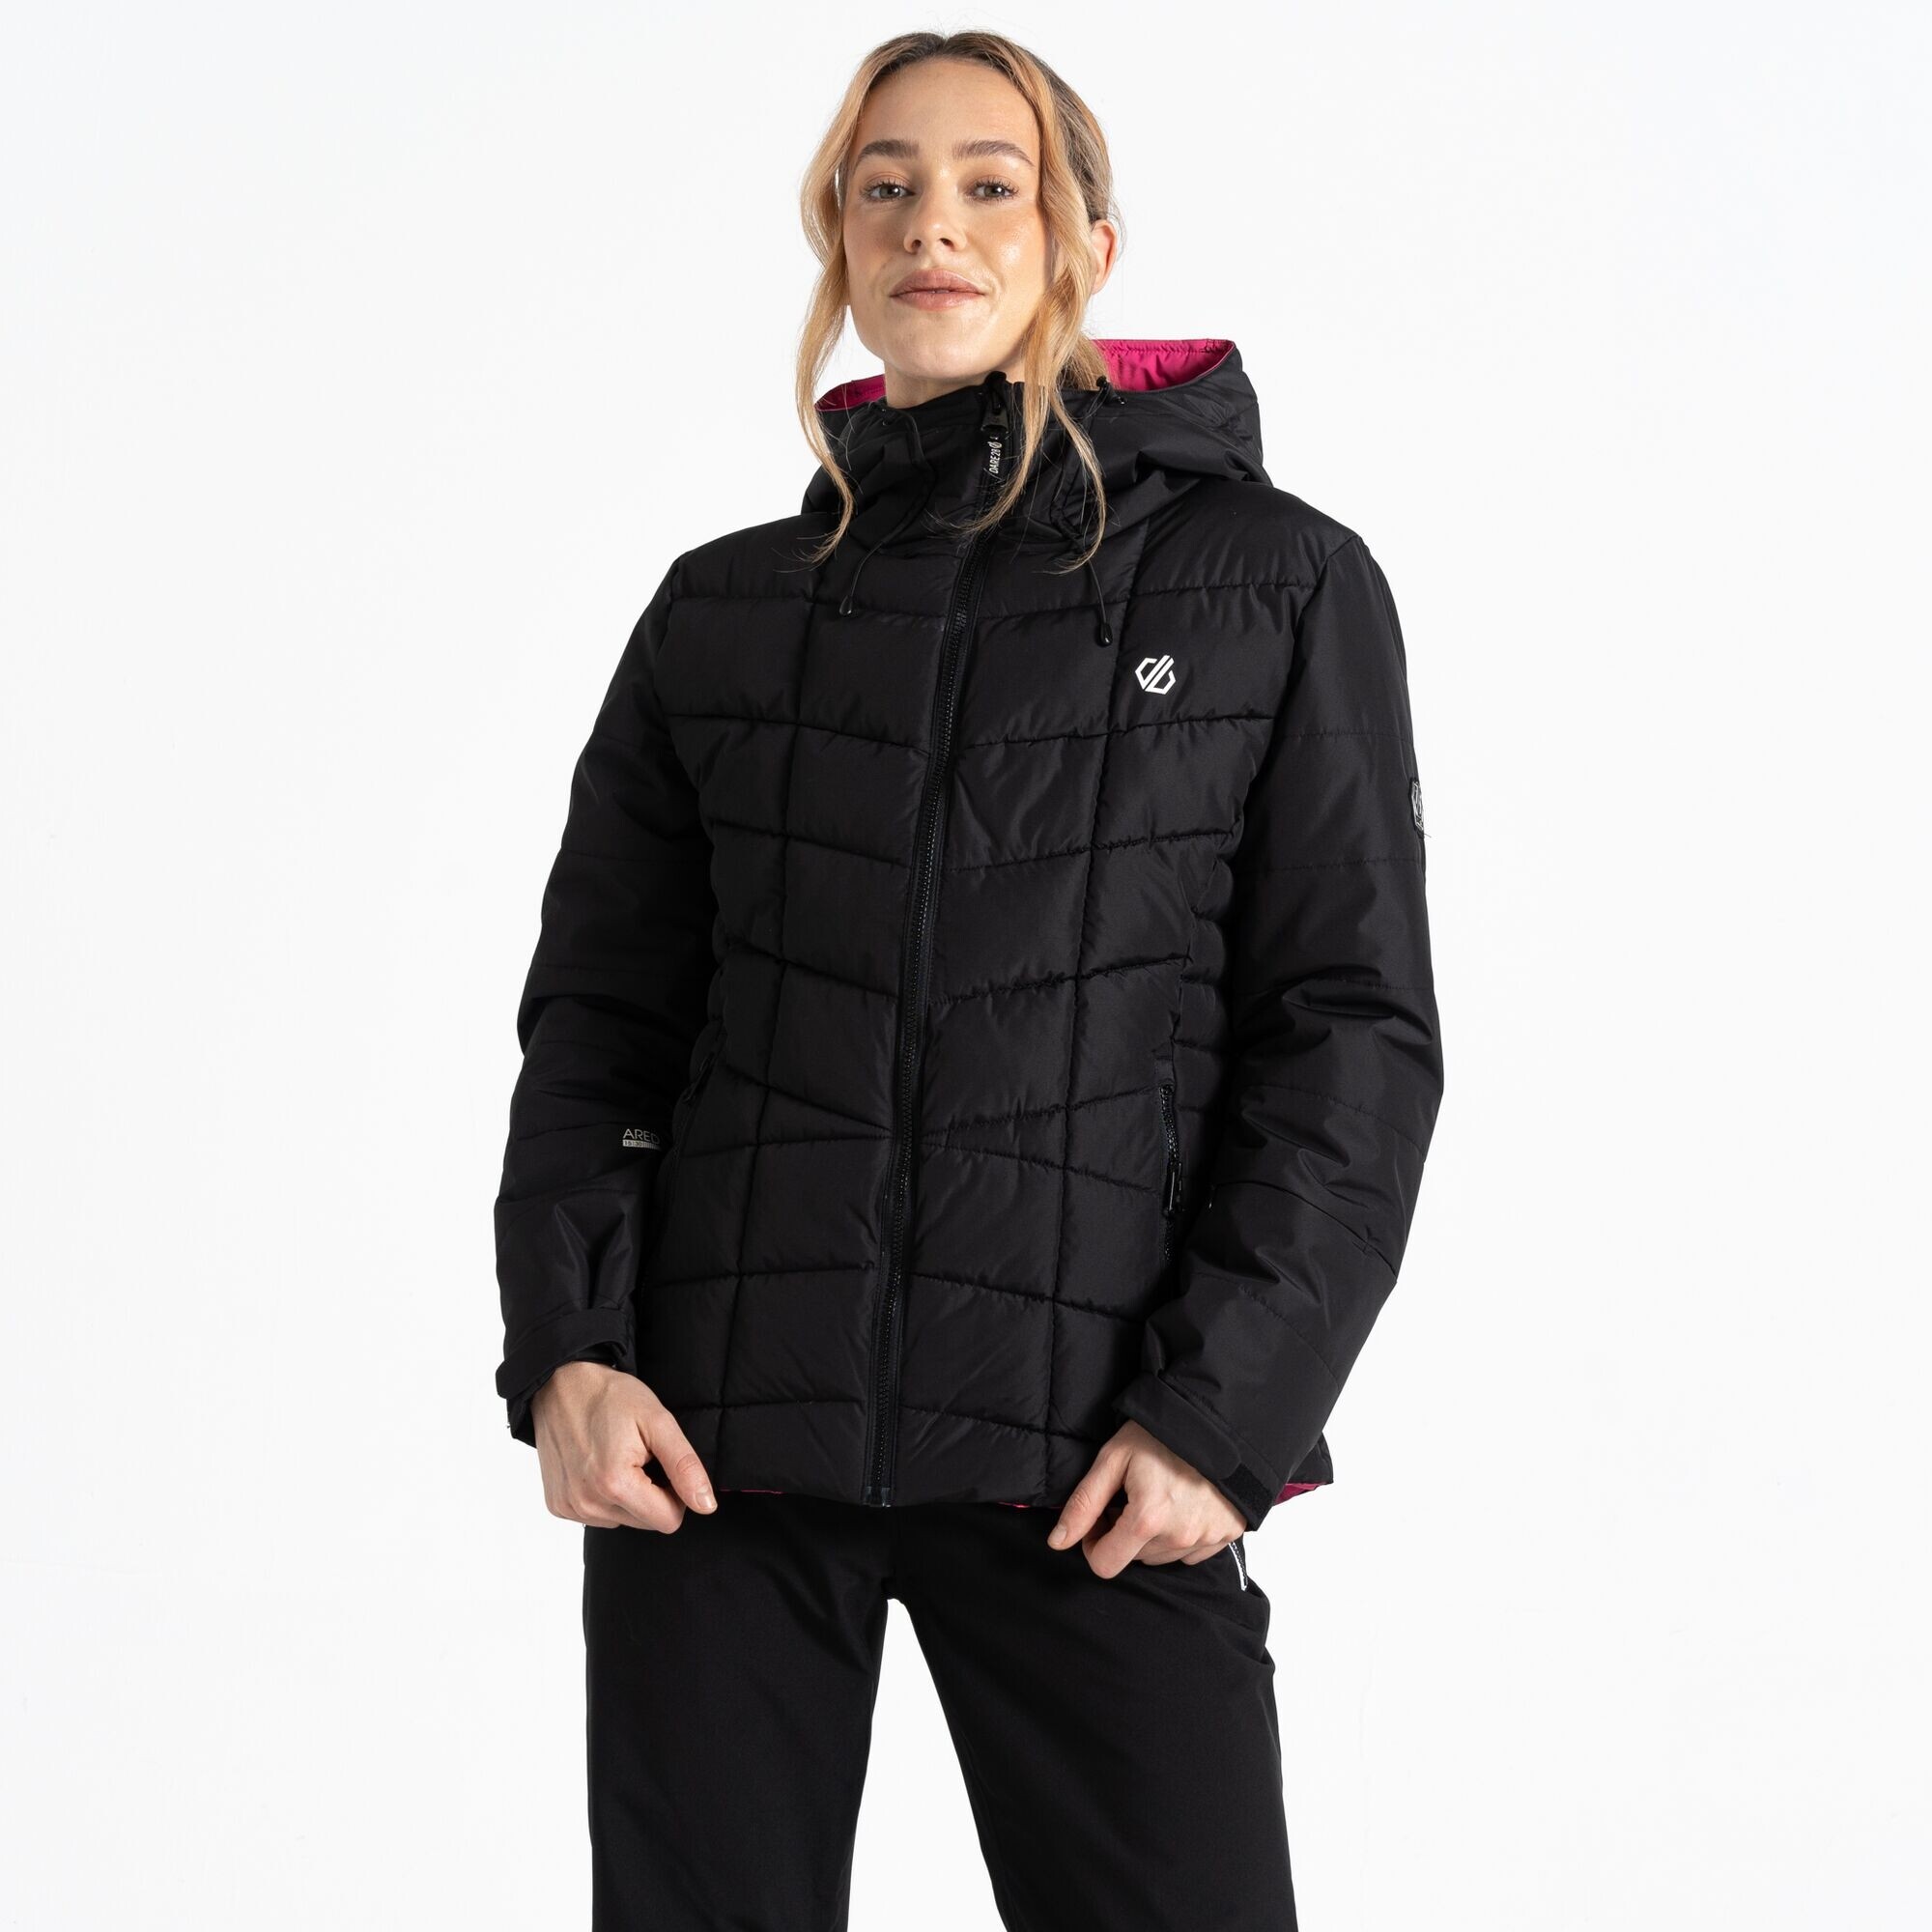 Dámská lyžařská bunda Blindside Jacket DWP569-800 černá - Dare2B 38